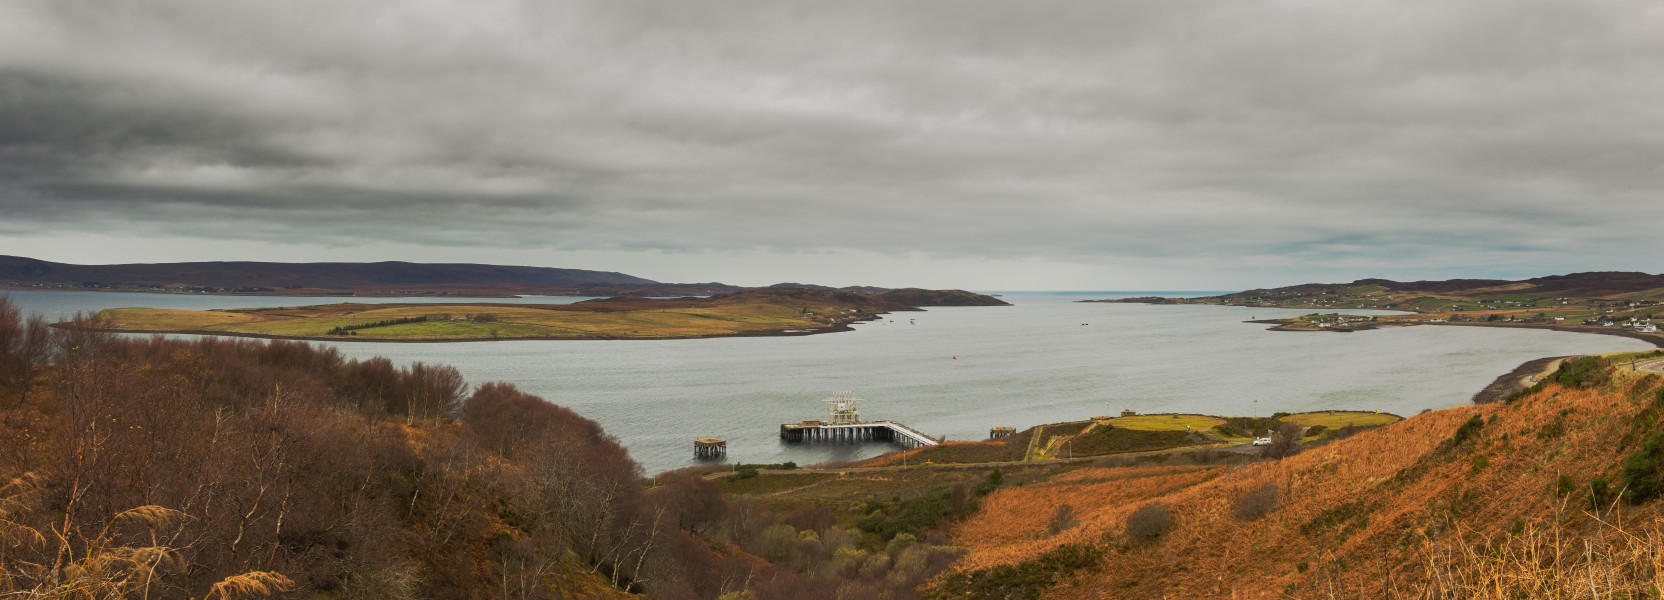 Loch Ewe Panorama - November 7th 2014